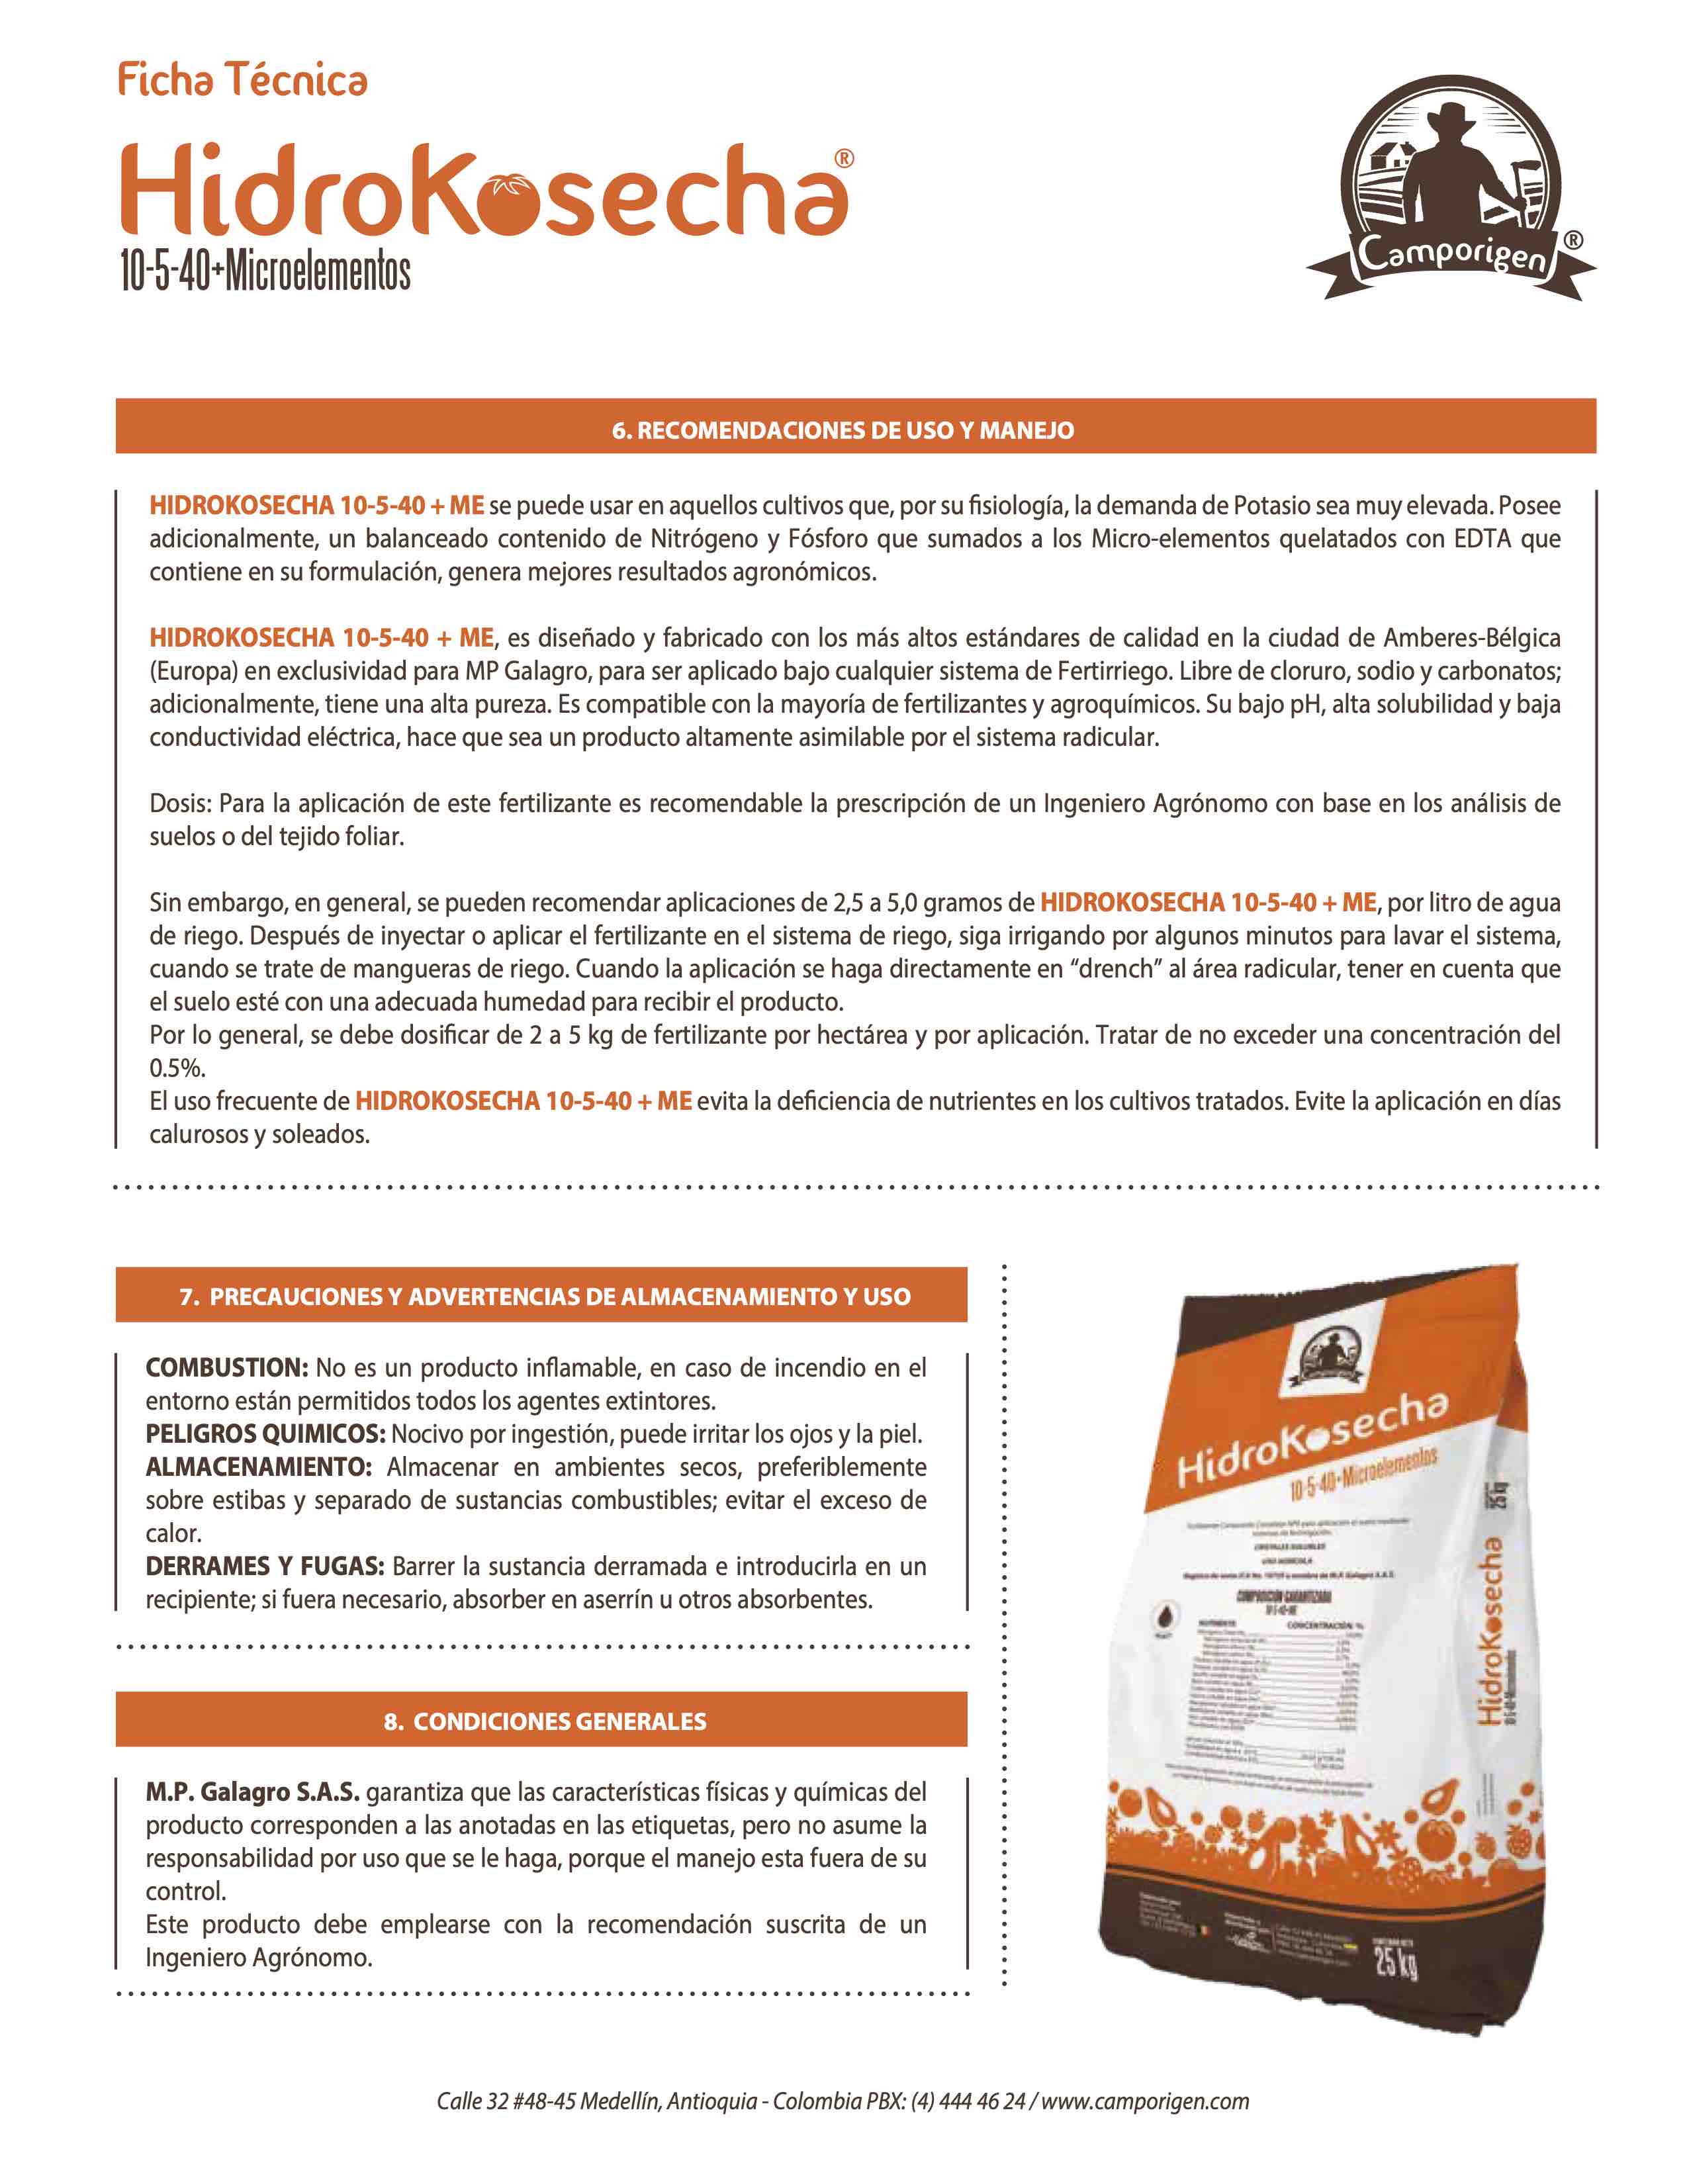 HidroKosecha 10-5-40 + Microelementos Camporigen